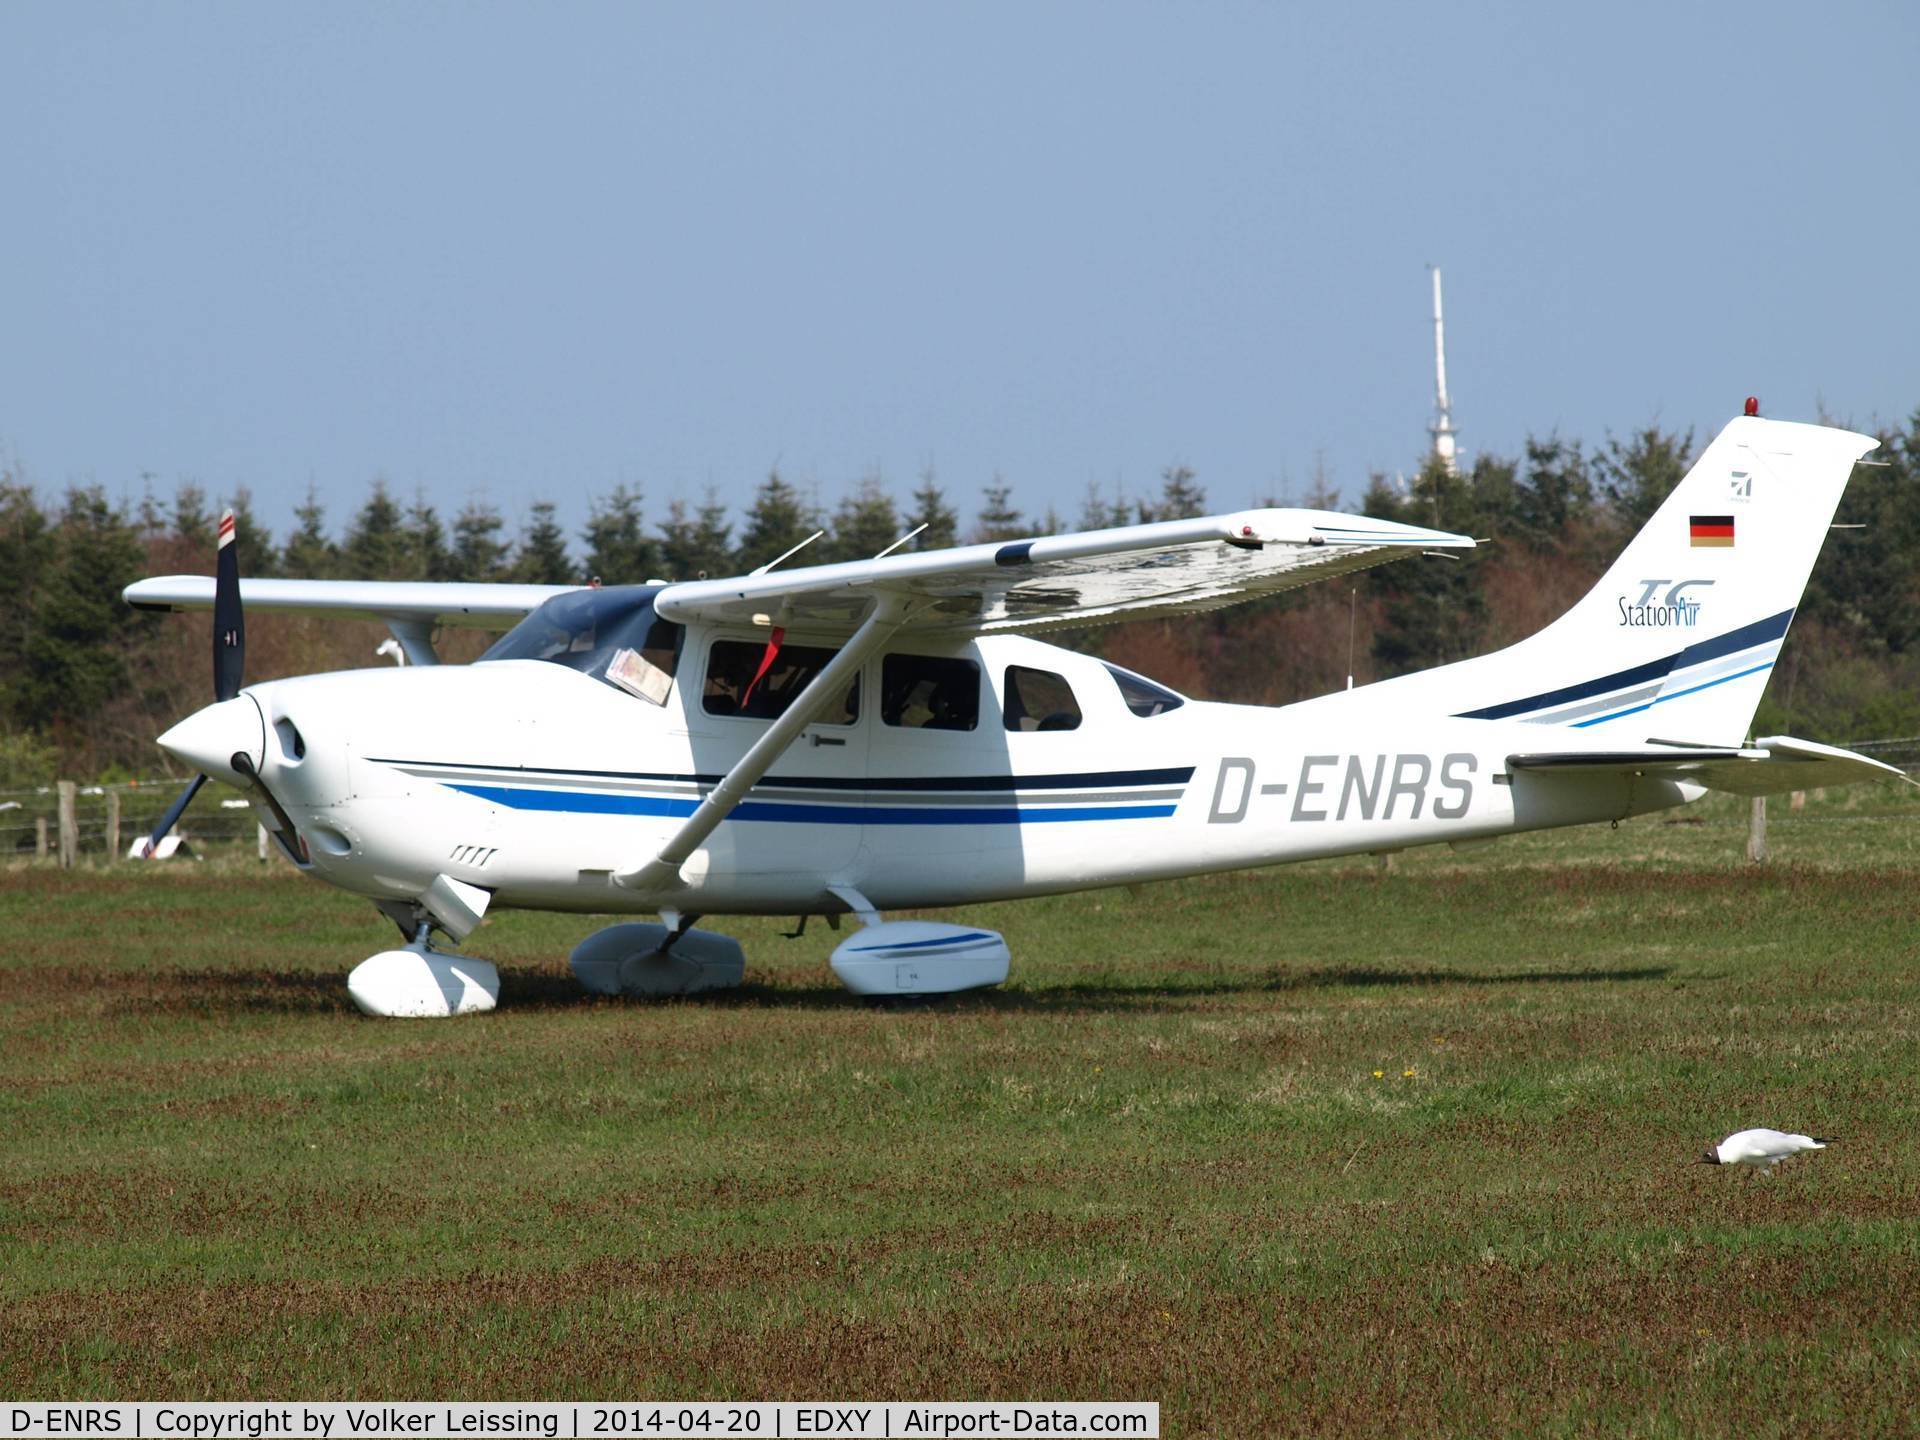 D-ENRS, 2003 Cessna T206H Turbo Stationair C/N T20608378, parking